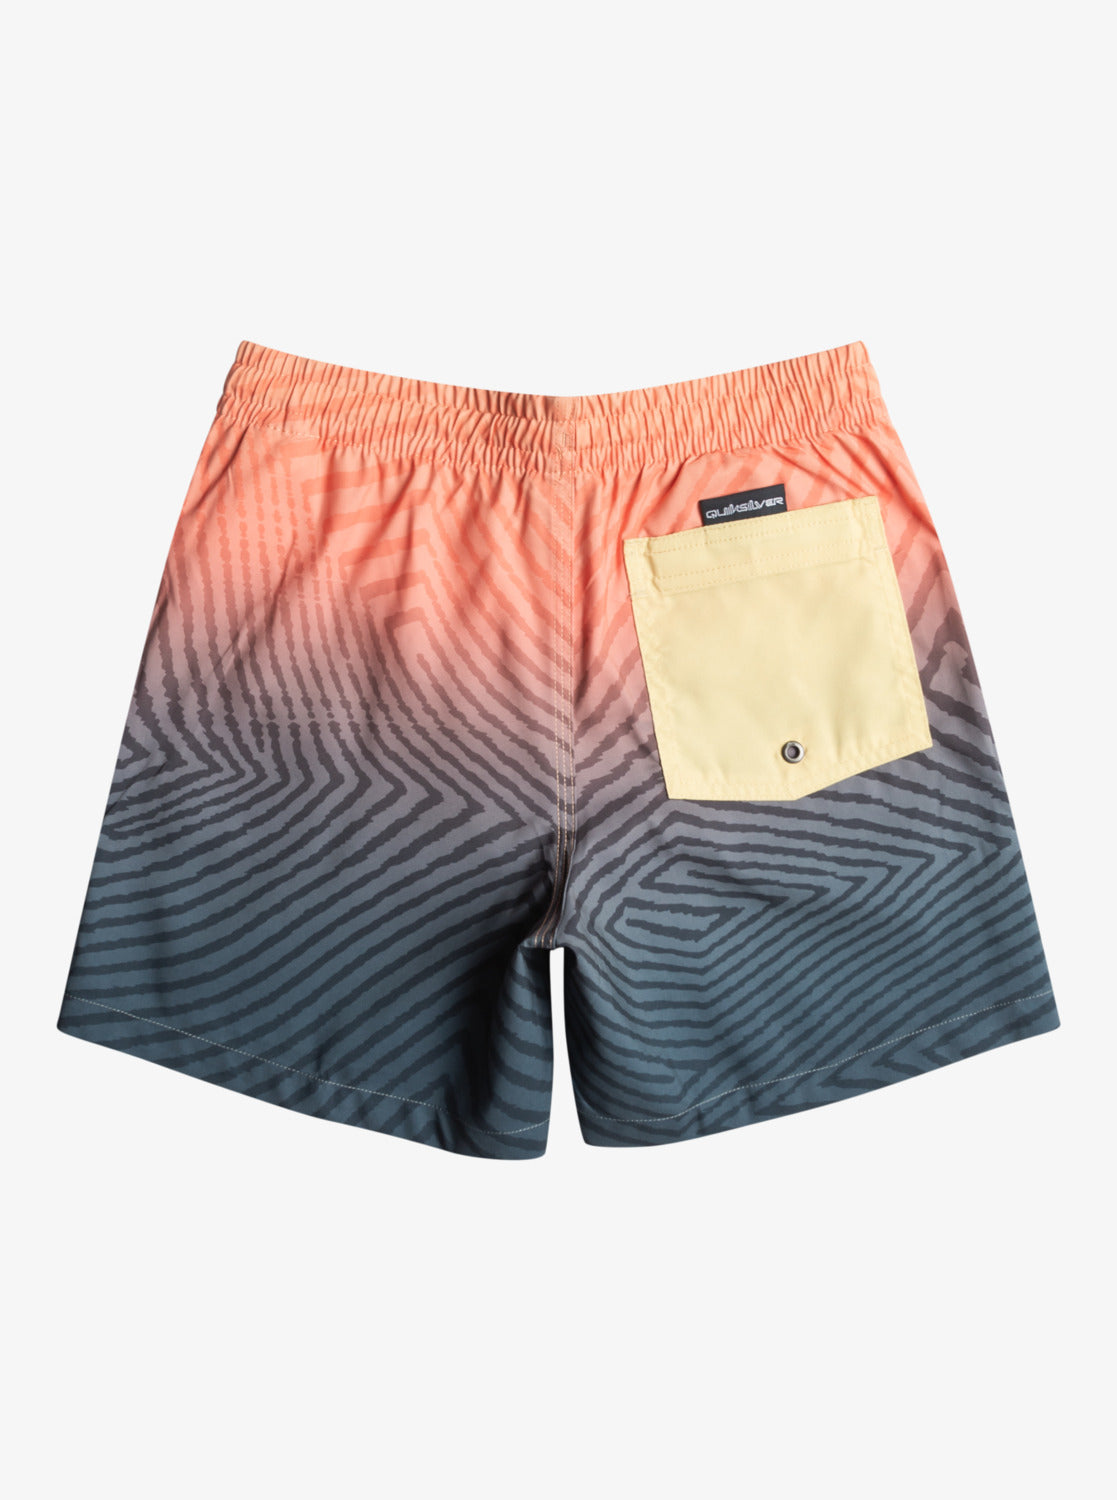 Quiksilver Everyday Warped Logo 14" - Swim Shorts in Orange/Navy